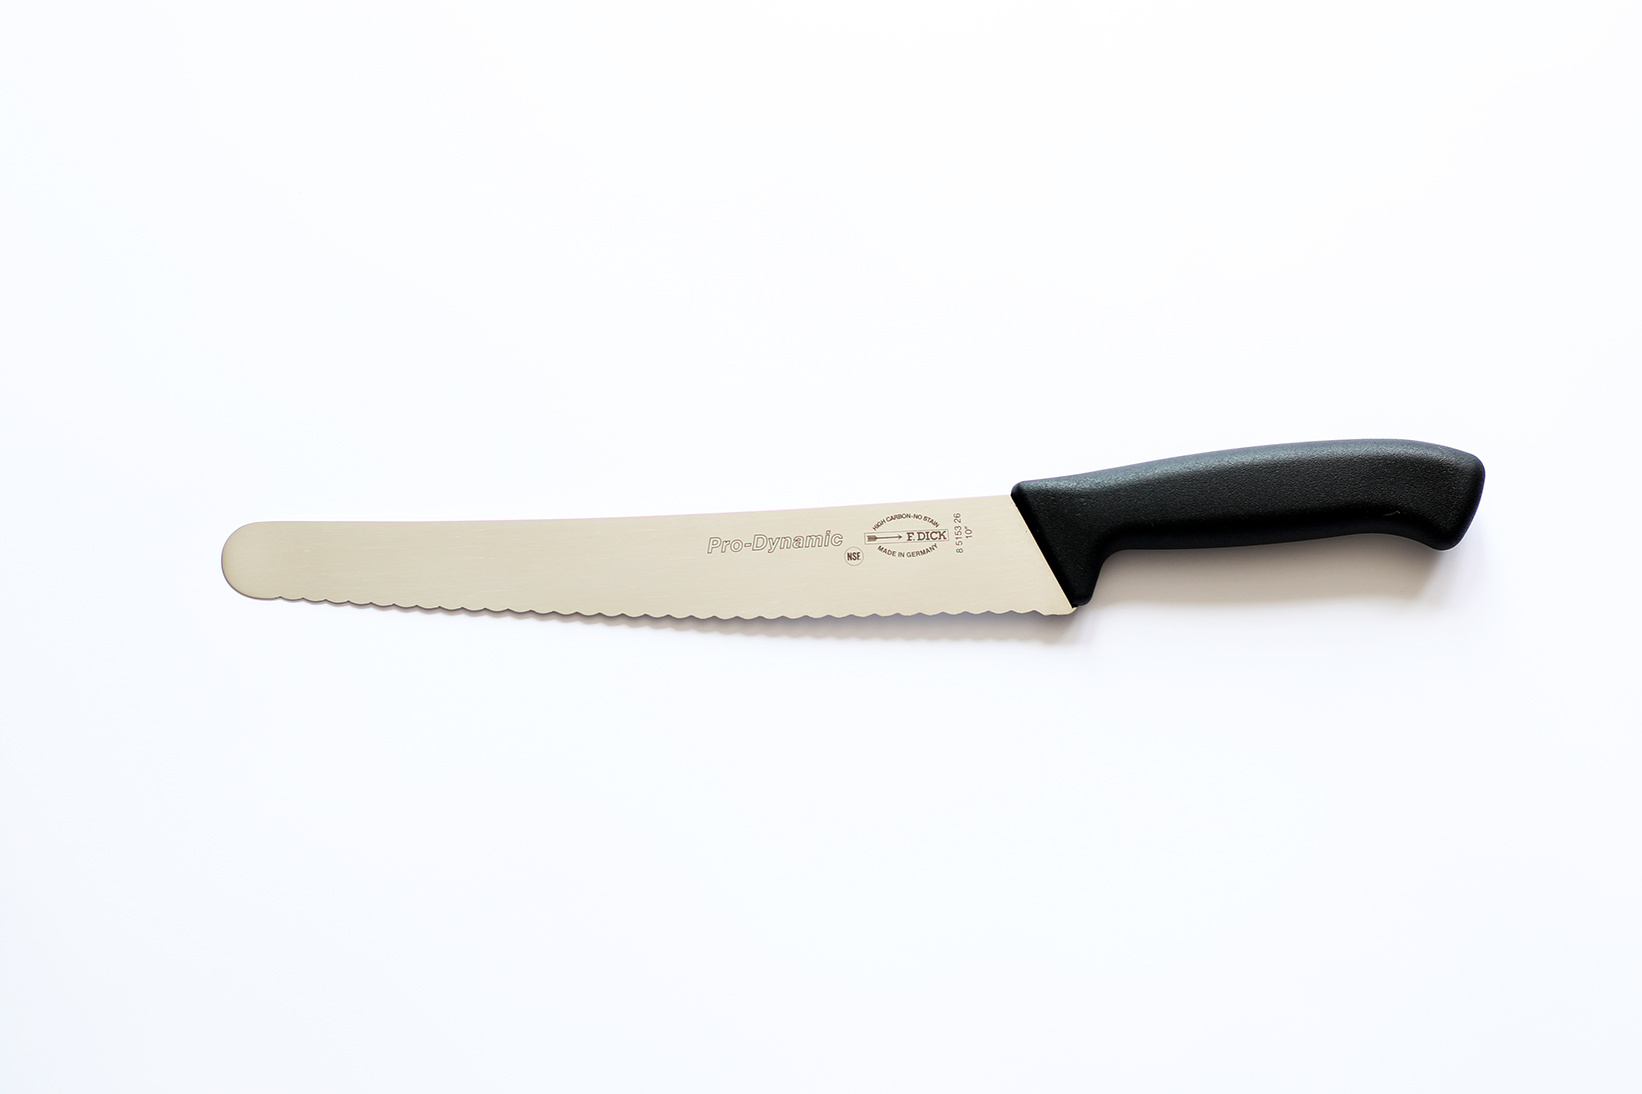 Nůž na pečivo ProDynamic